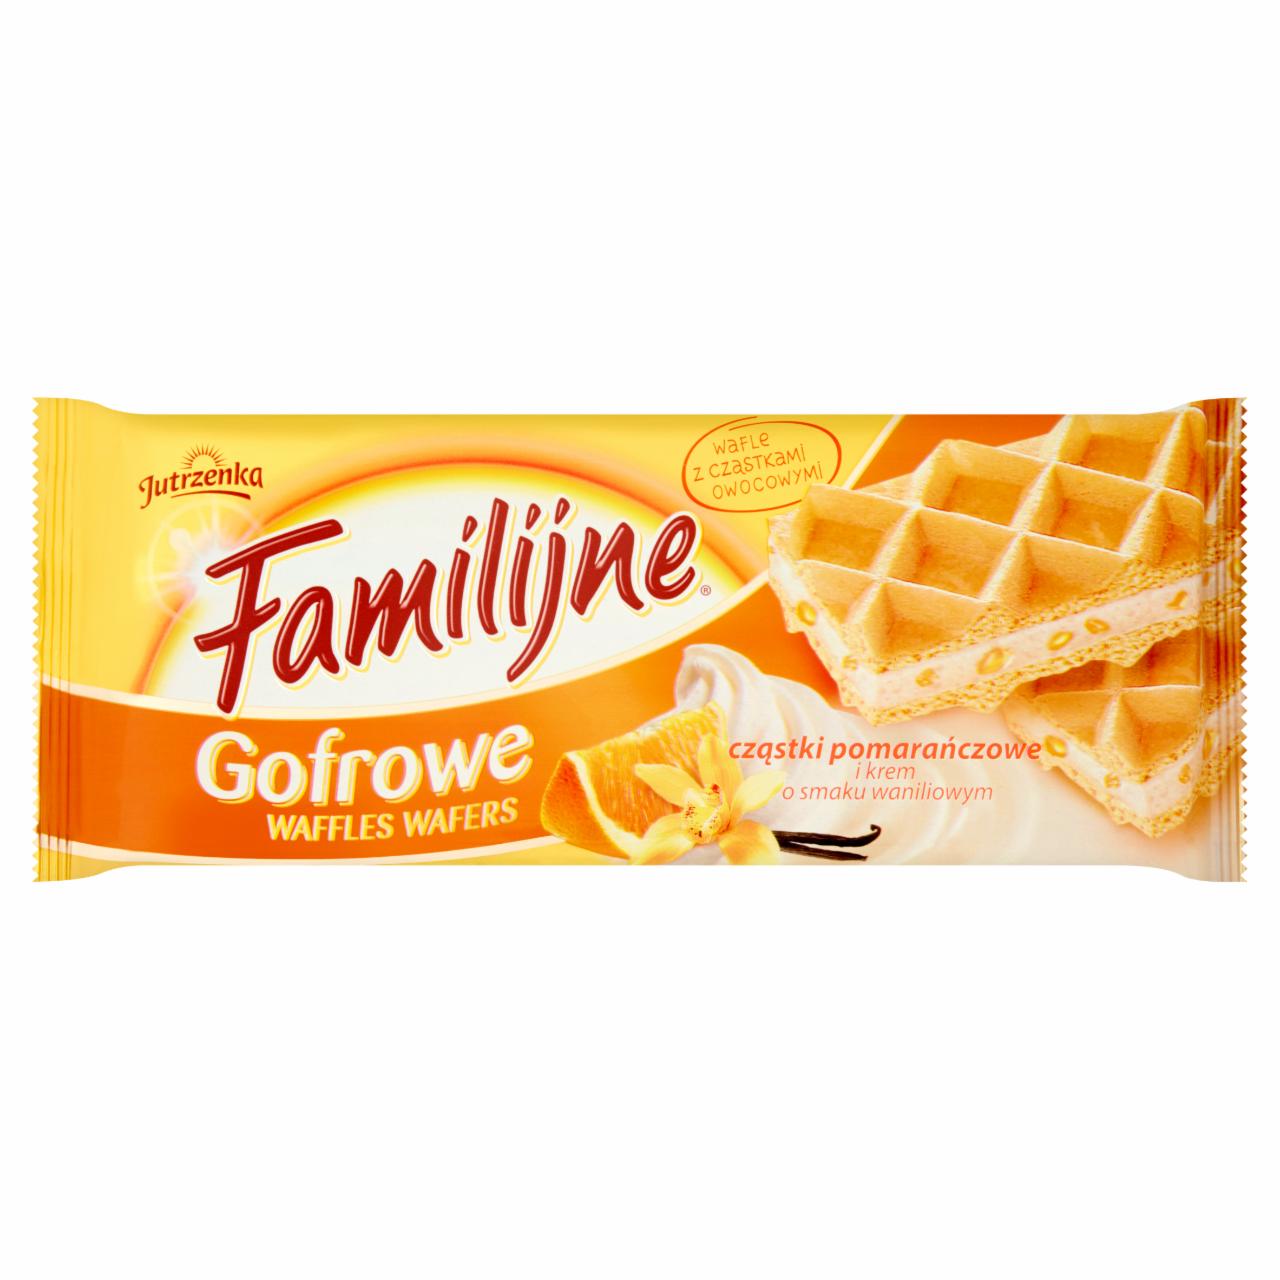 Zdjęcia - Familijne Gofrowe wafle cząstki pomarańczowe i krem o smaku waniliowym 160 g